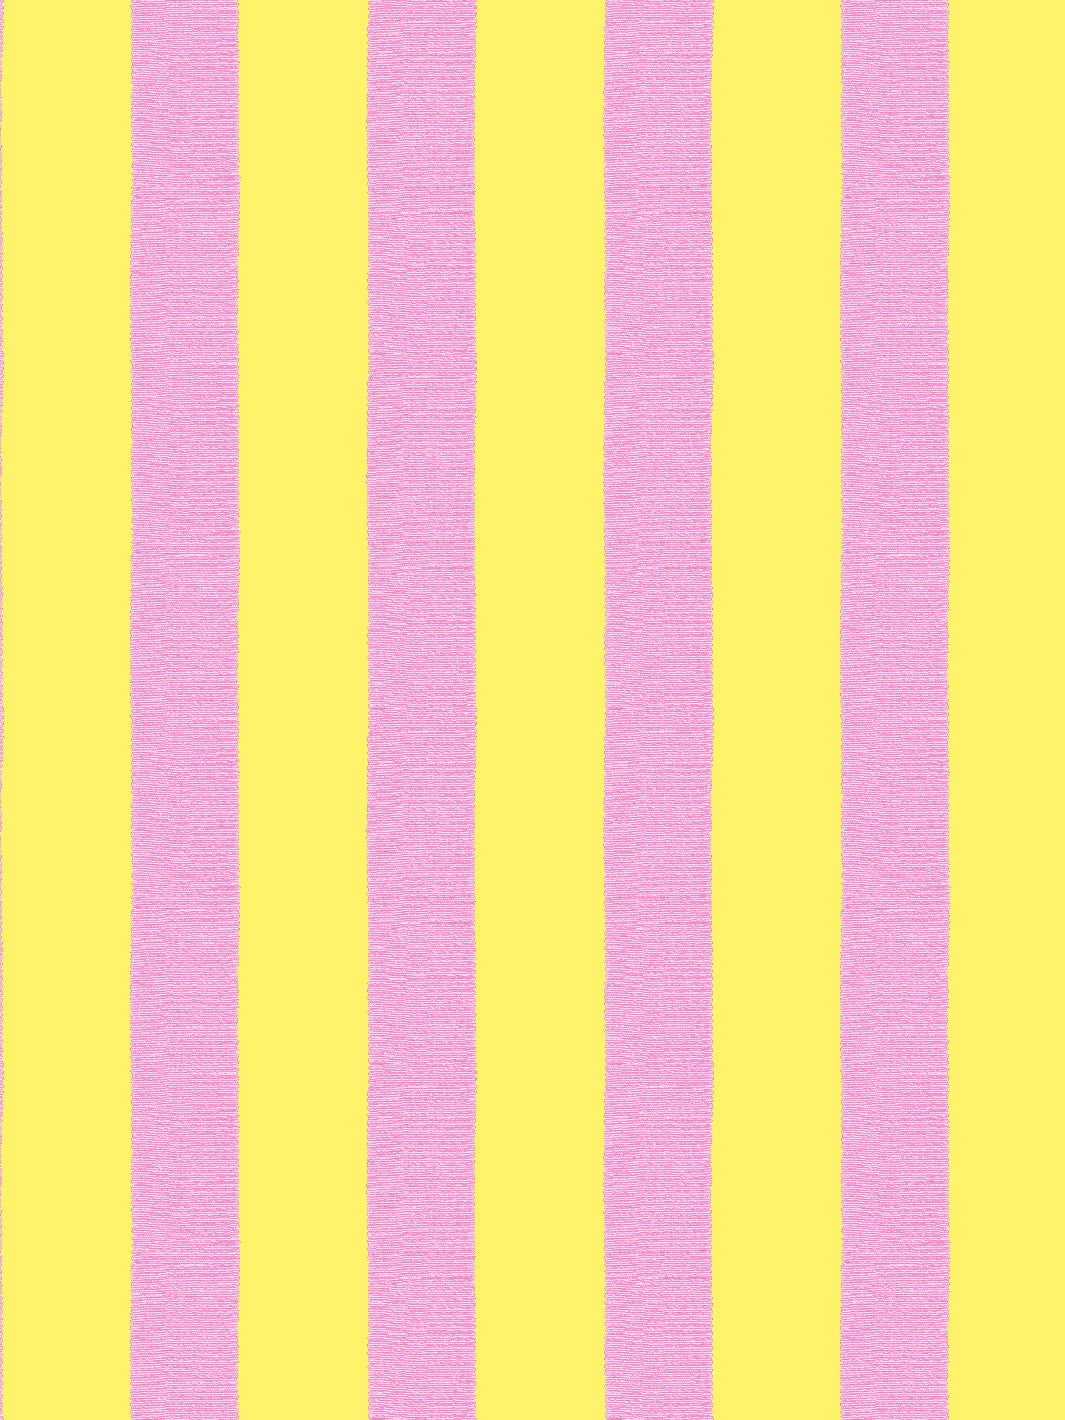 'Grosgrain Stripe' Wallpaper by Sarah Jessica Parker - Lemon Drop Rosé